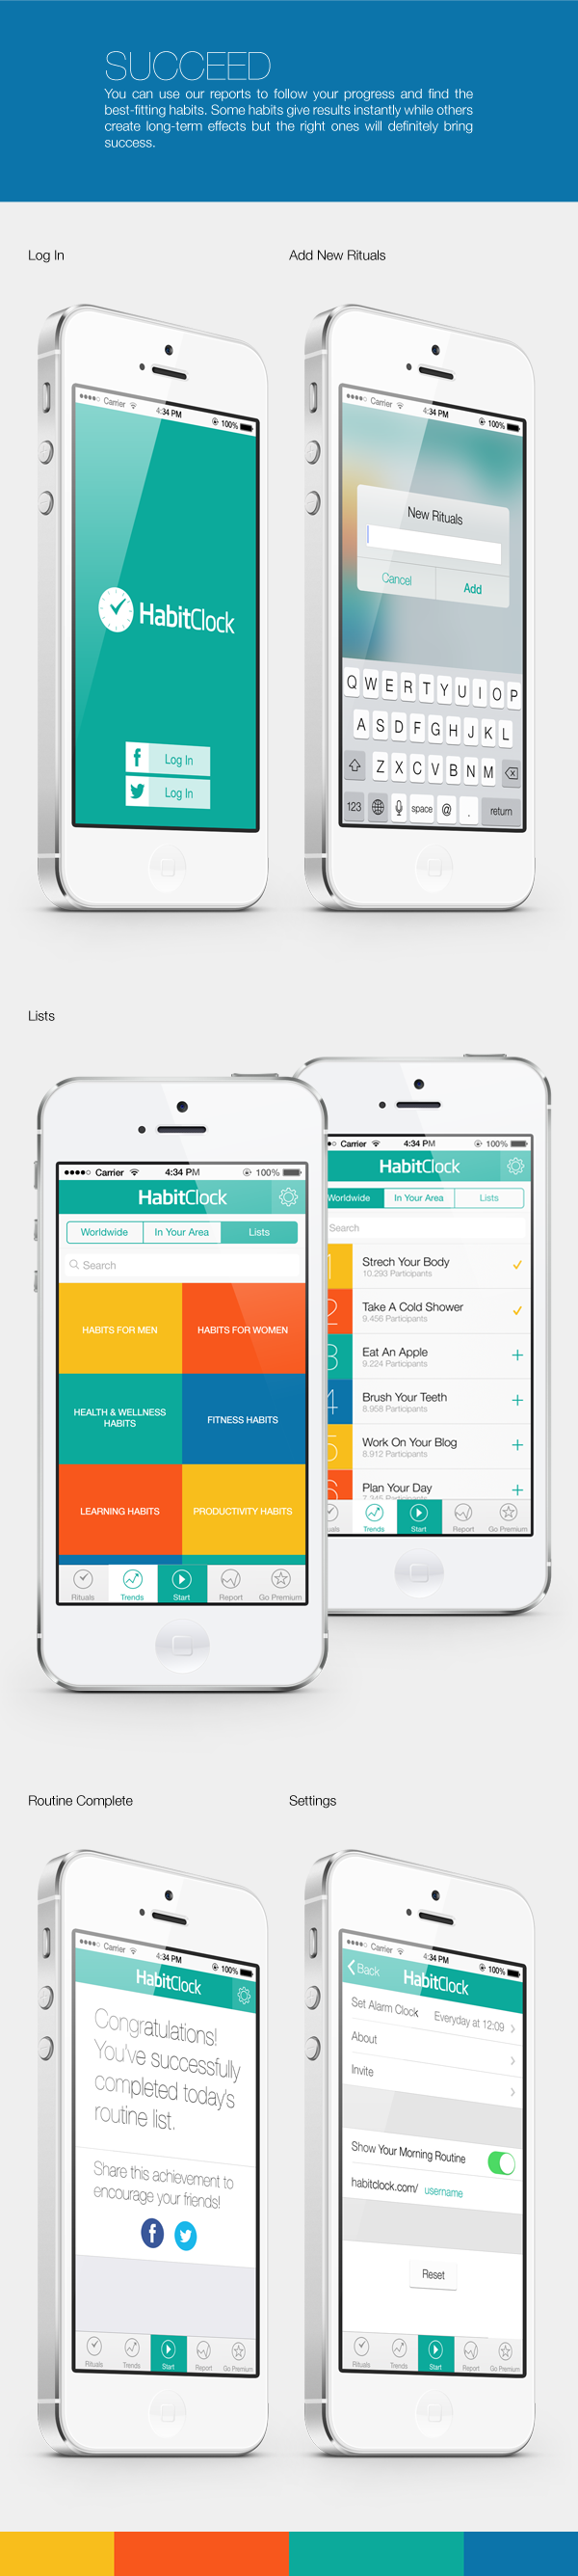 habitclock iOS 7 app iphone Routine alarm clock UI ux habit MORNING time ios7